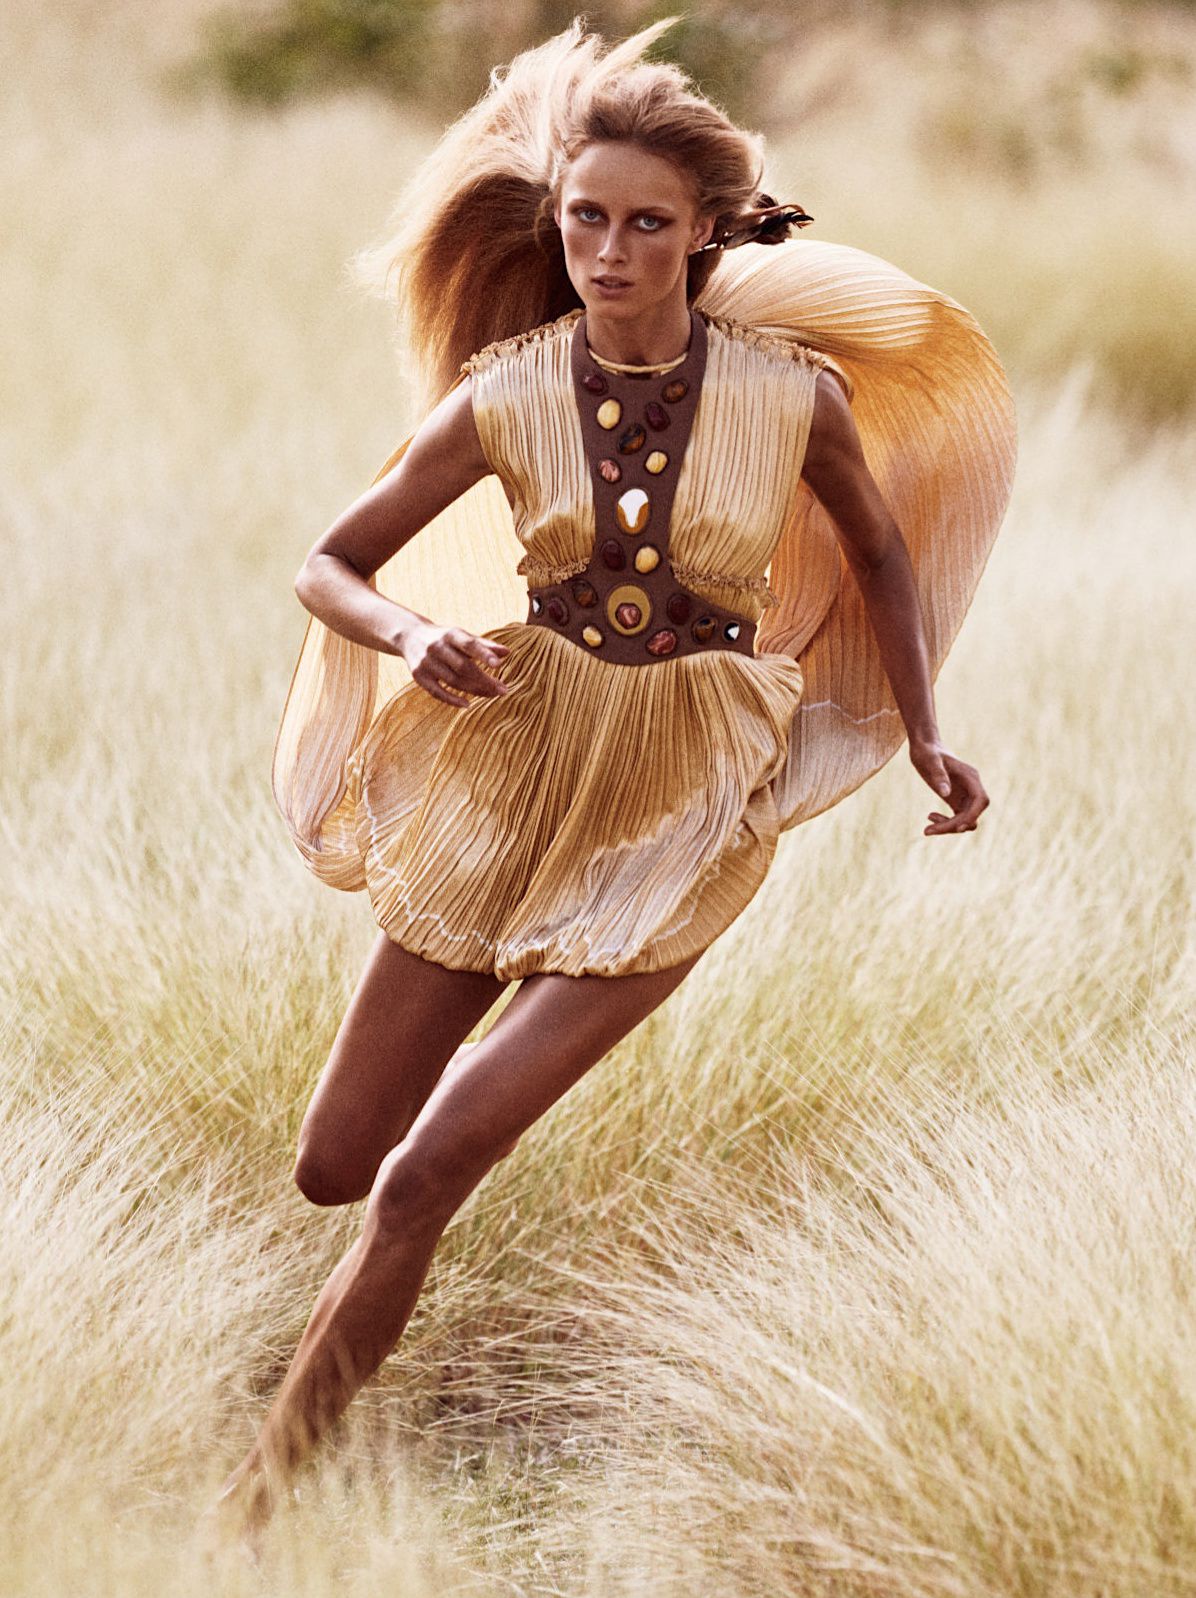 Vogue Paris Rianne Van Rompaey Runs In The Field HD Image